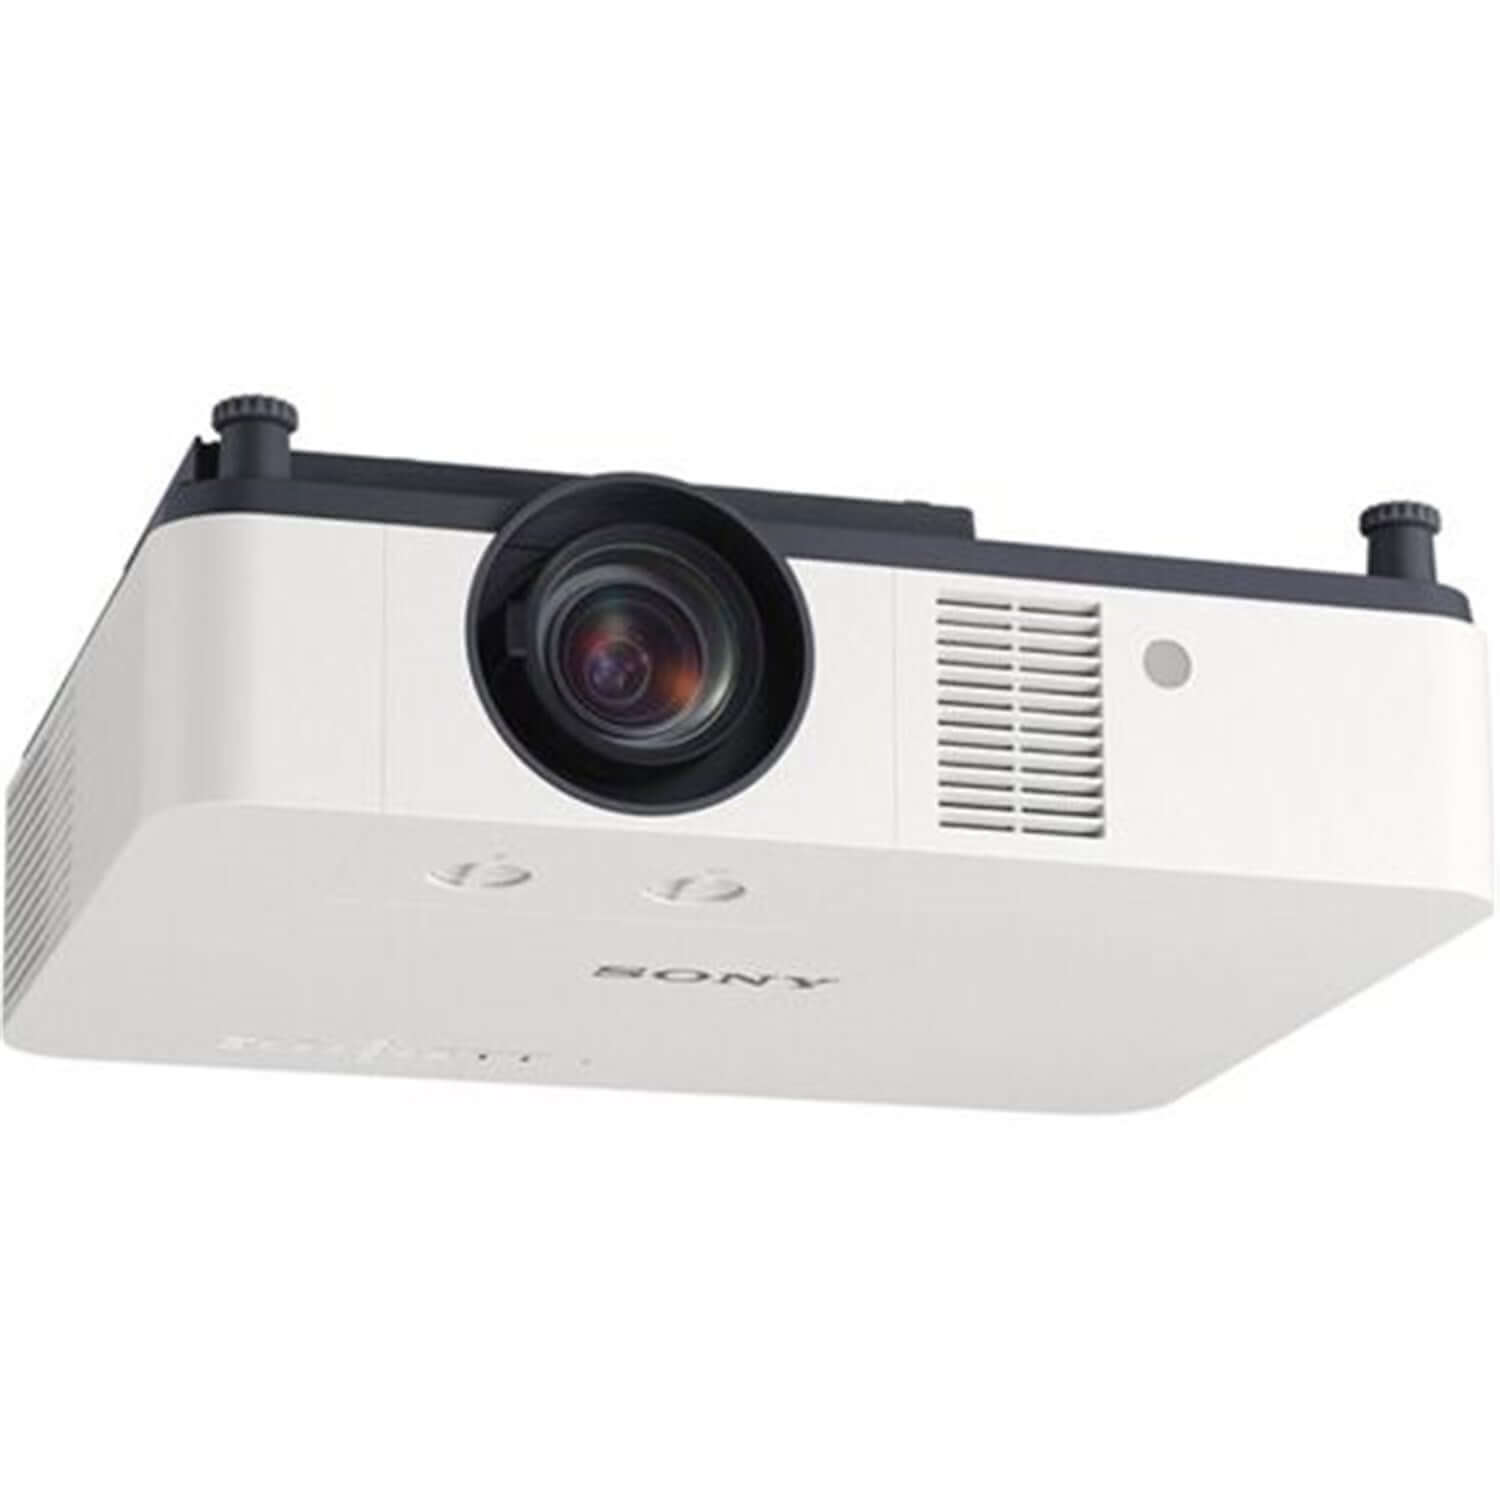 Provision Projectors Sony VPL-PHZ61 WUXGA 6400 Lumen Laser Projector